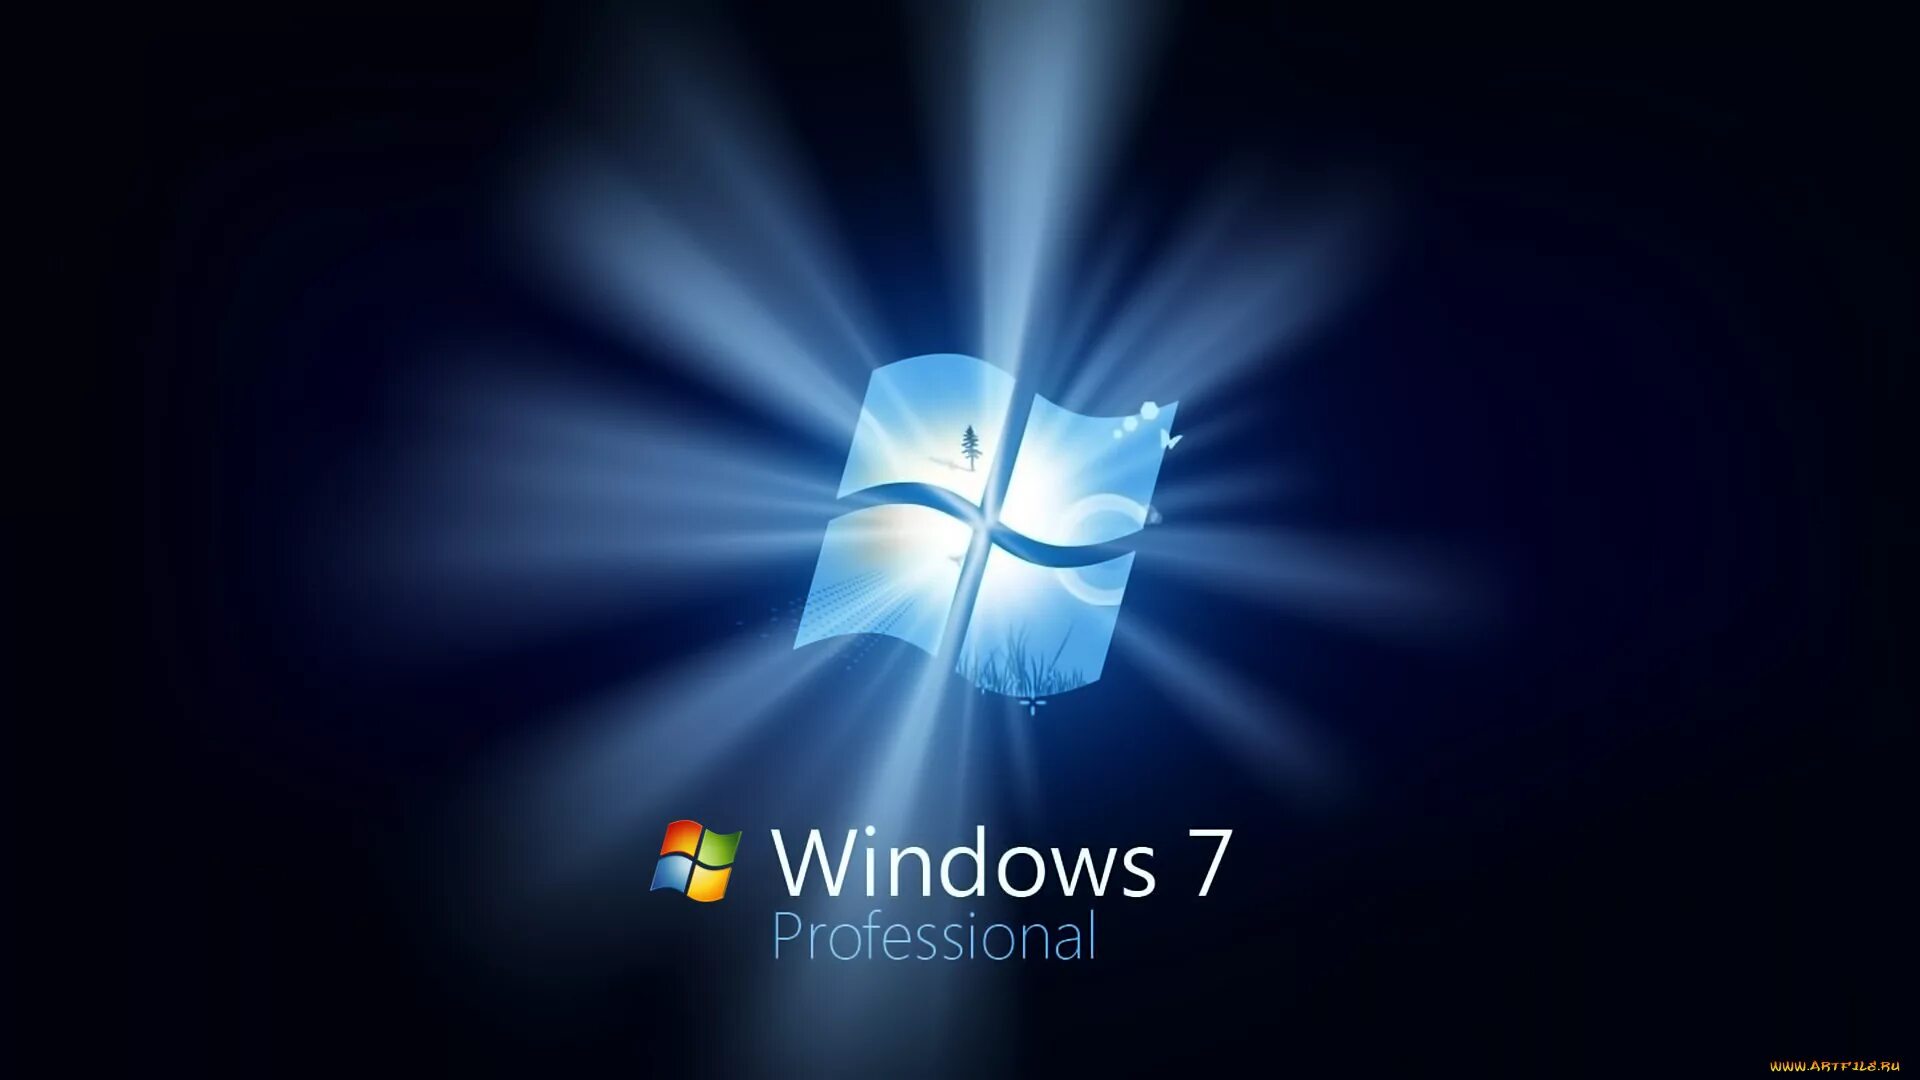 Windows 7 рабочий стол. Картинки виндовс. Фон Windows 7. Windows 7 профессиональная.